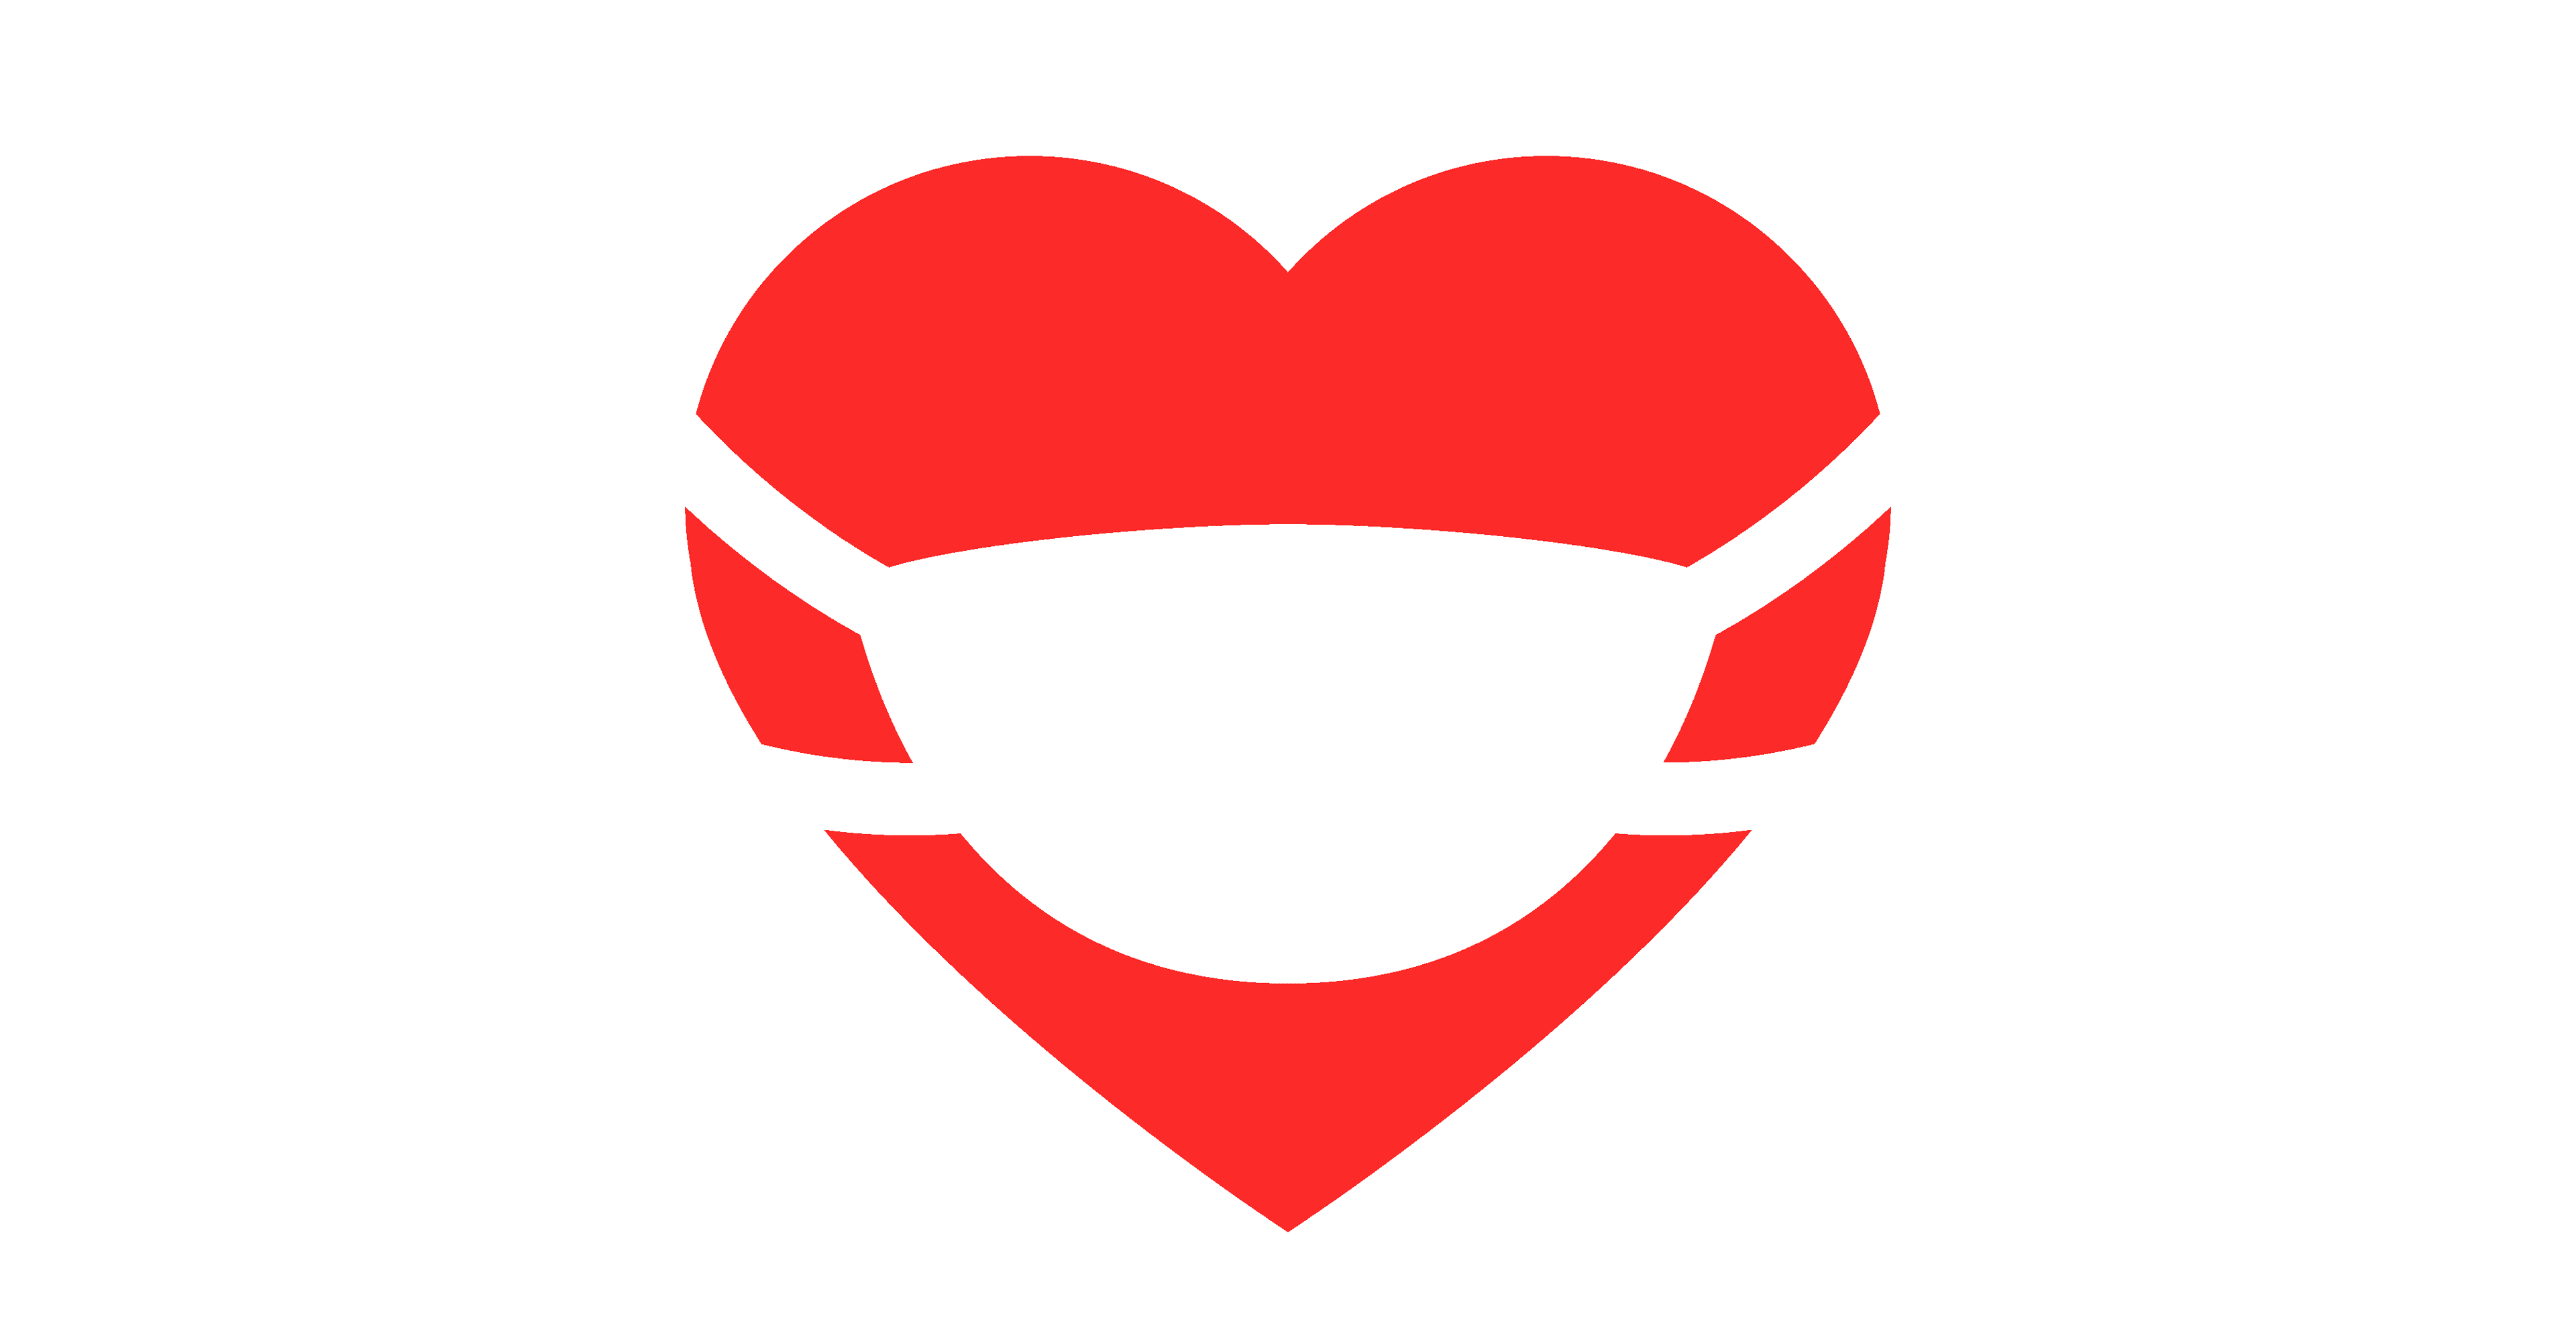 Red Heart Valentine trägt eine medizinische Maske. Vektorillustration.